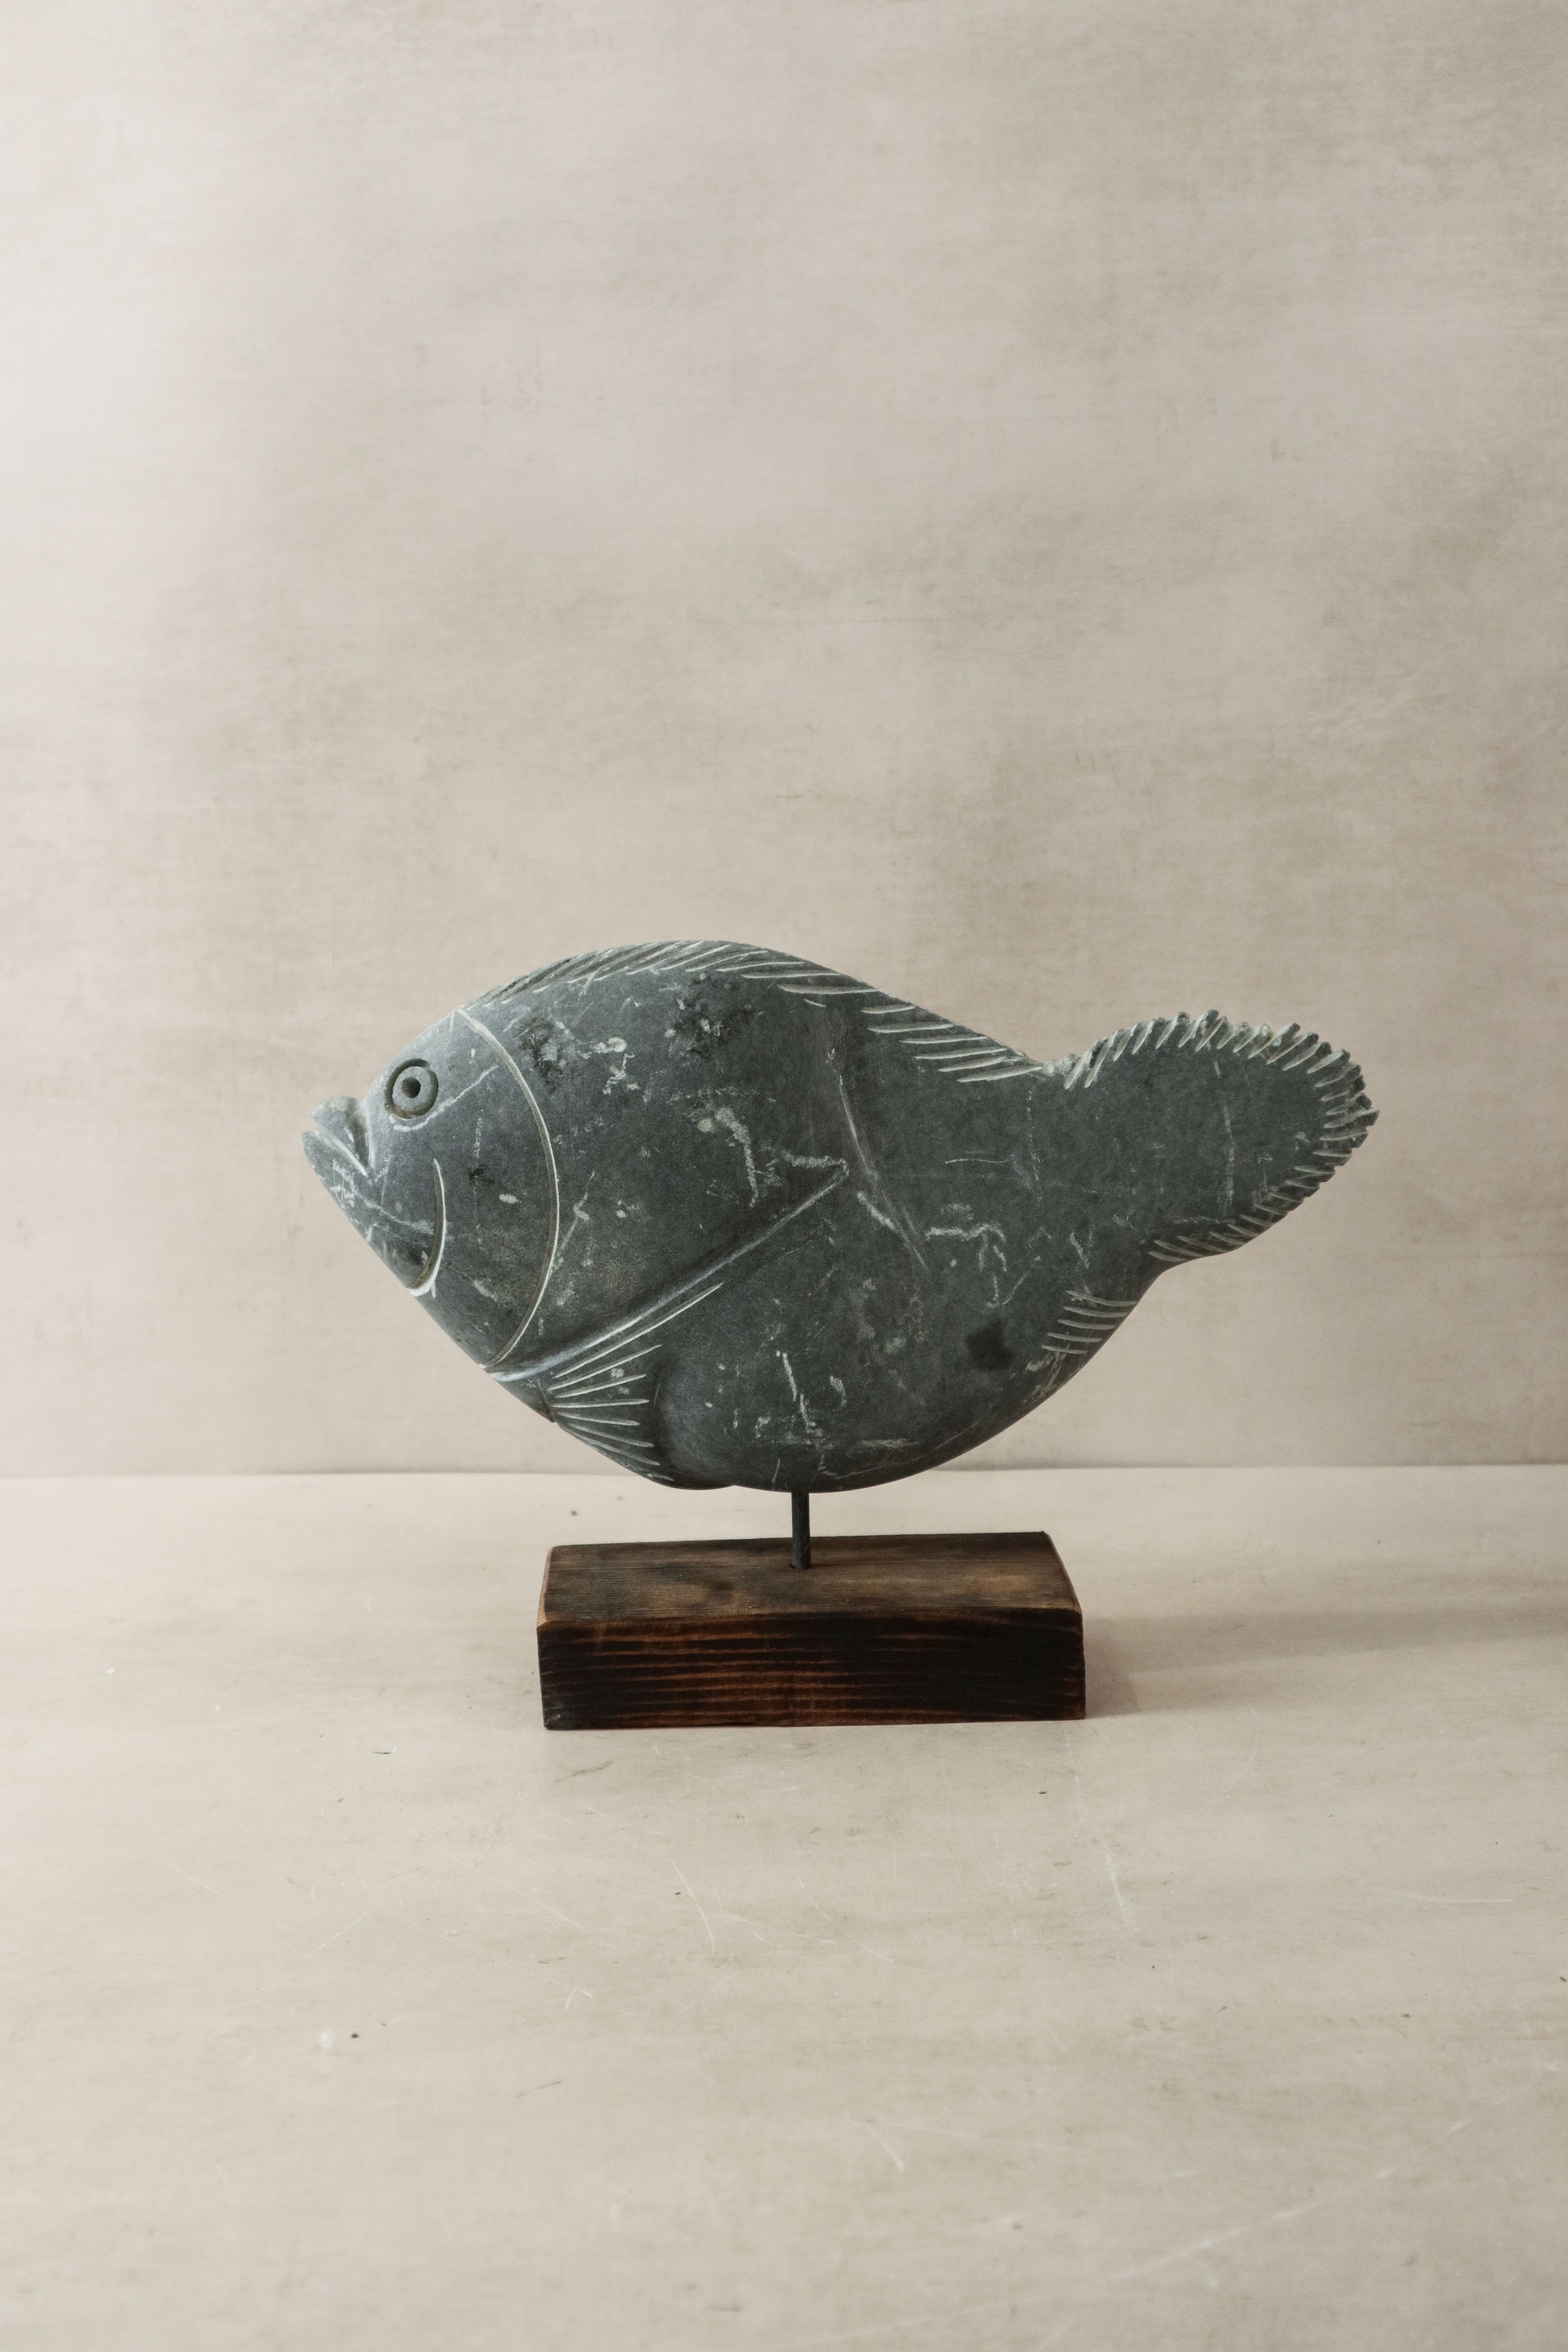 botanicalboysuk Stone Fish Sculpture - Zimbabwe - 35.4